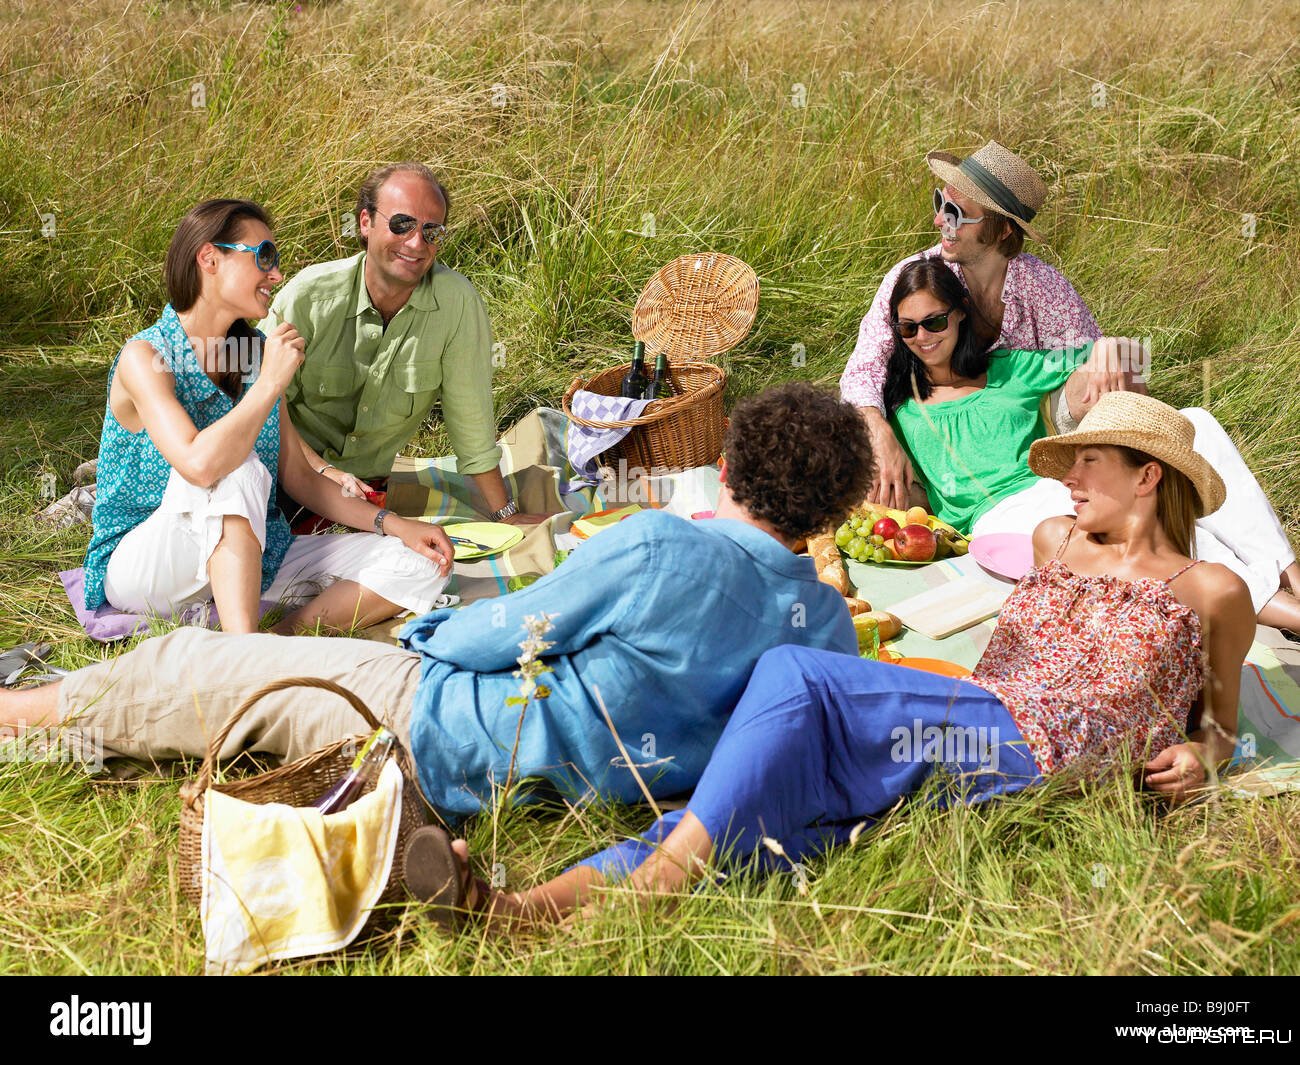 Выбирай пикник. Пикник на природе. Организация пикника на природе. Люди на природе пикник. Отдыхающие люди на природе.